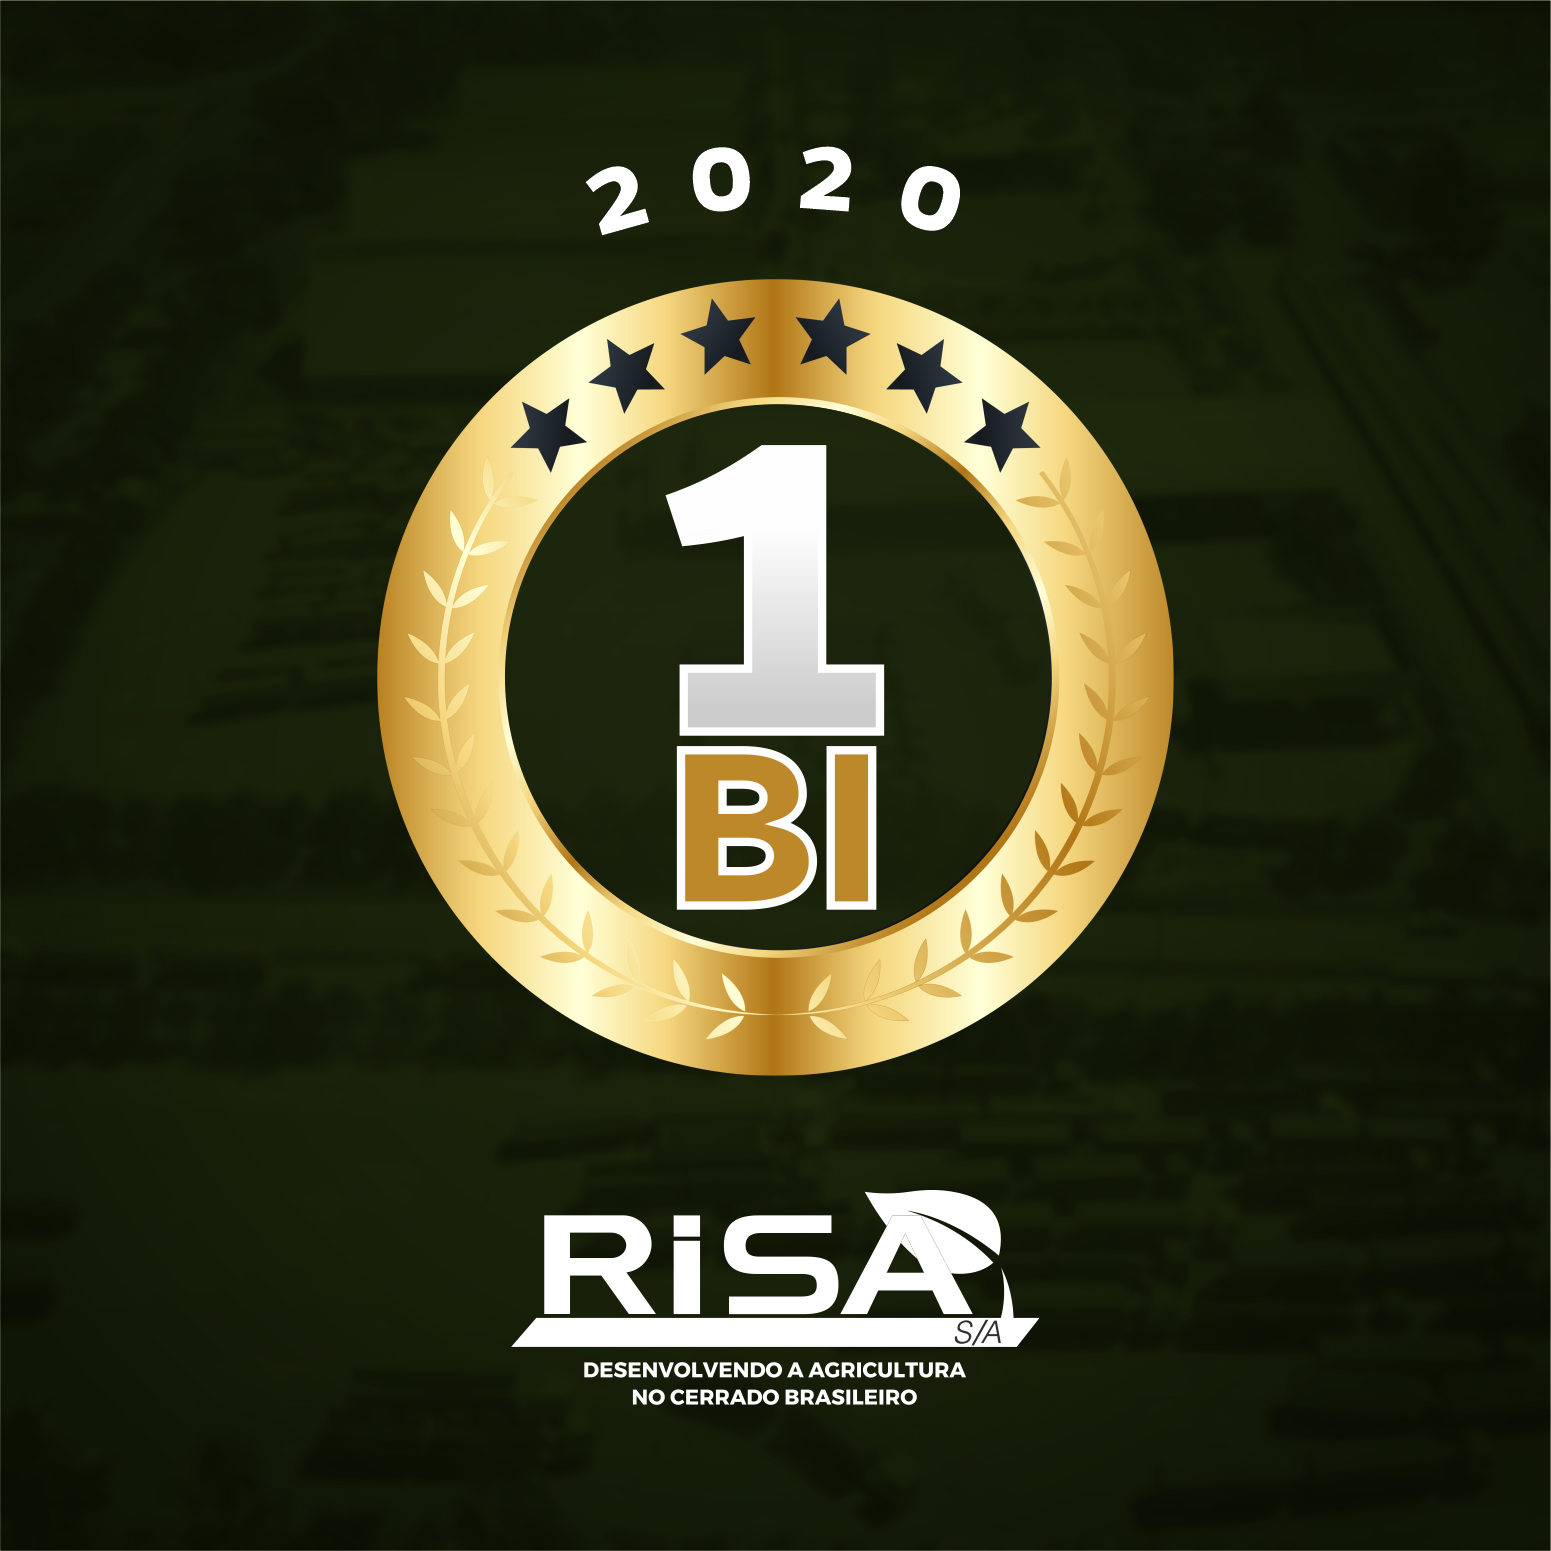 EM 2020 A RISA S/A SUPEROU A MARCA DE R$ 1 BILHÃO EM FATURAMENTO.